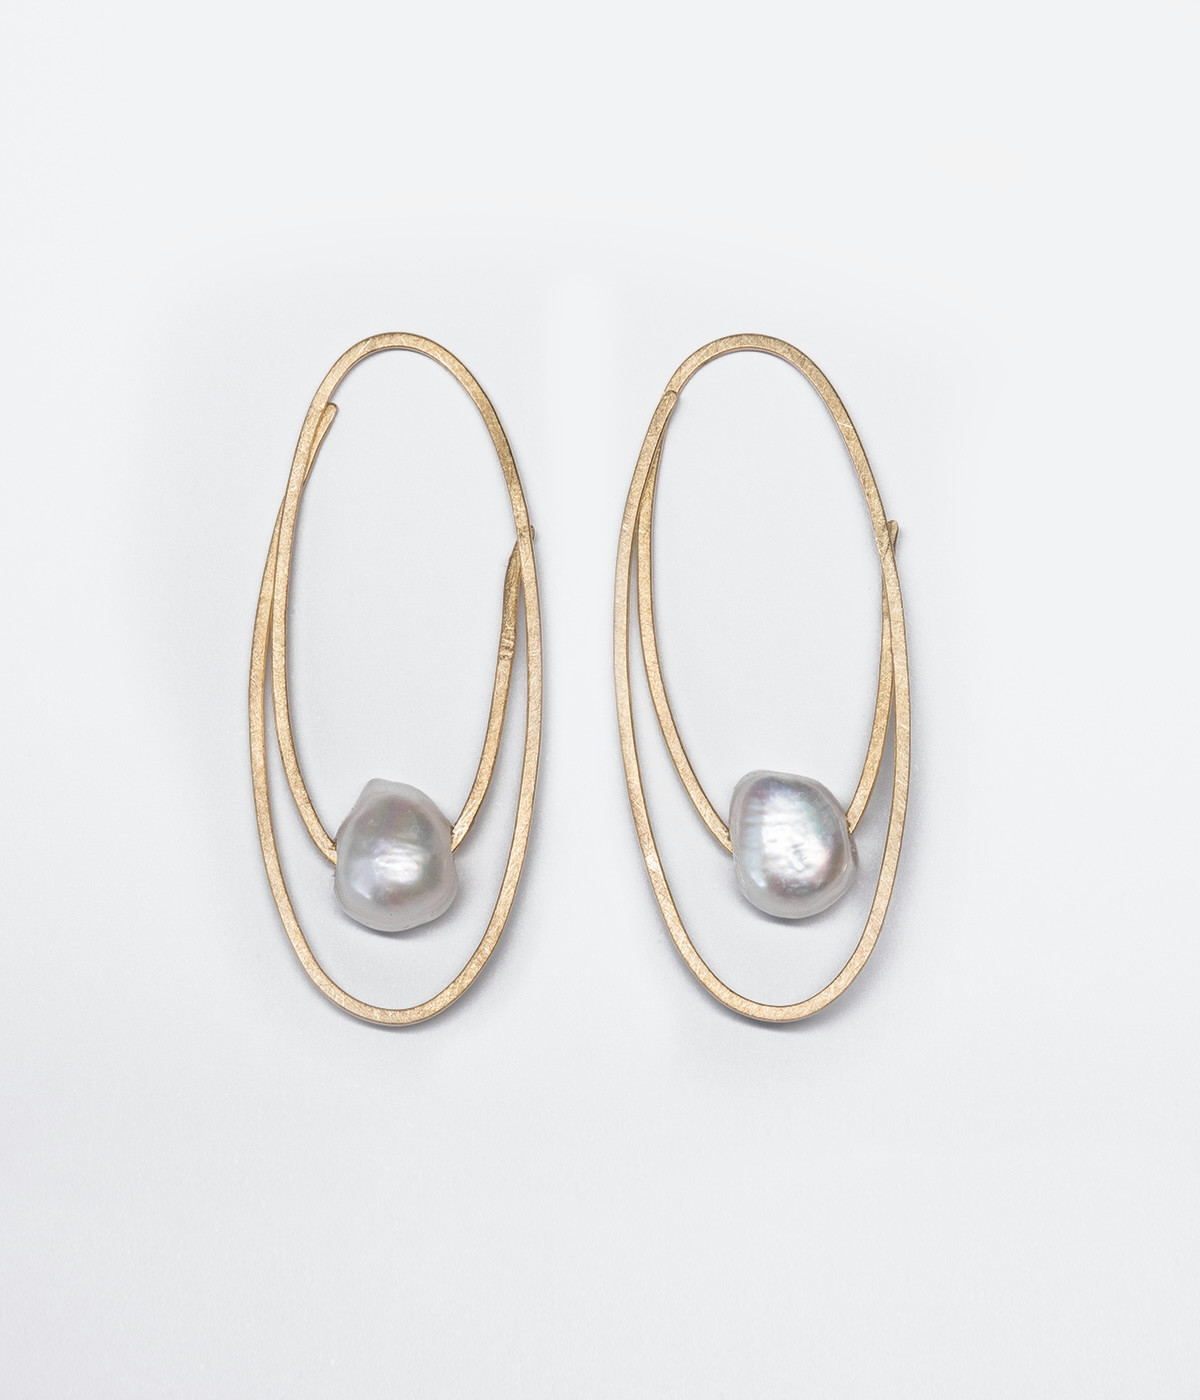 Oval of Love earrings